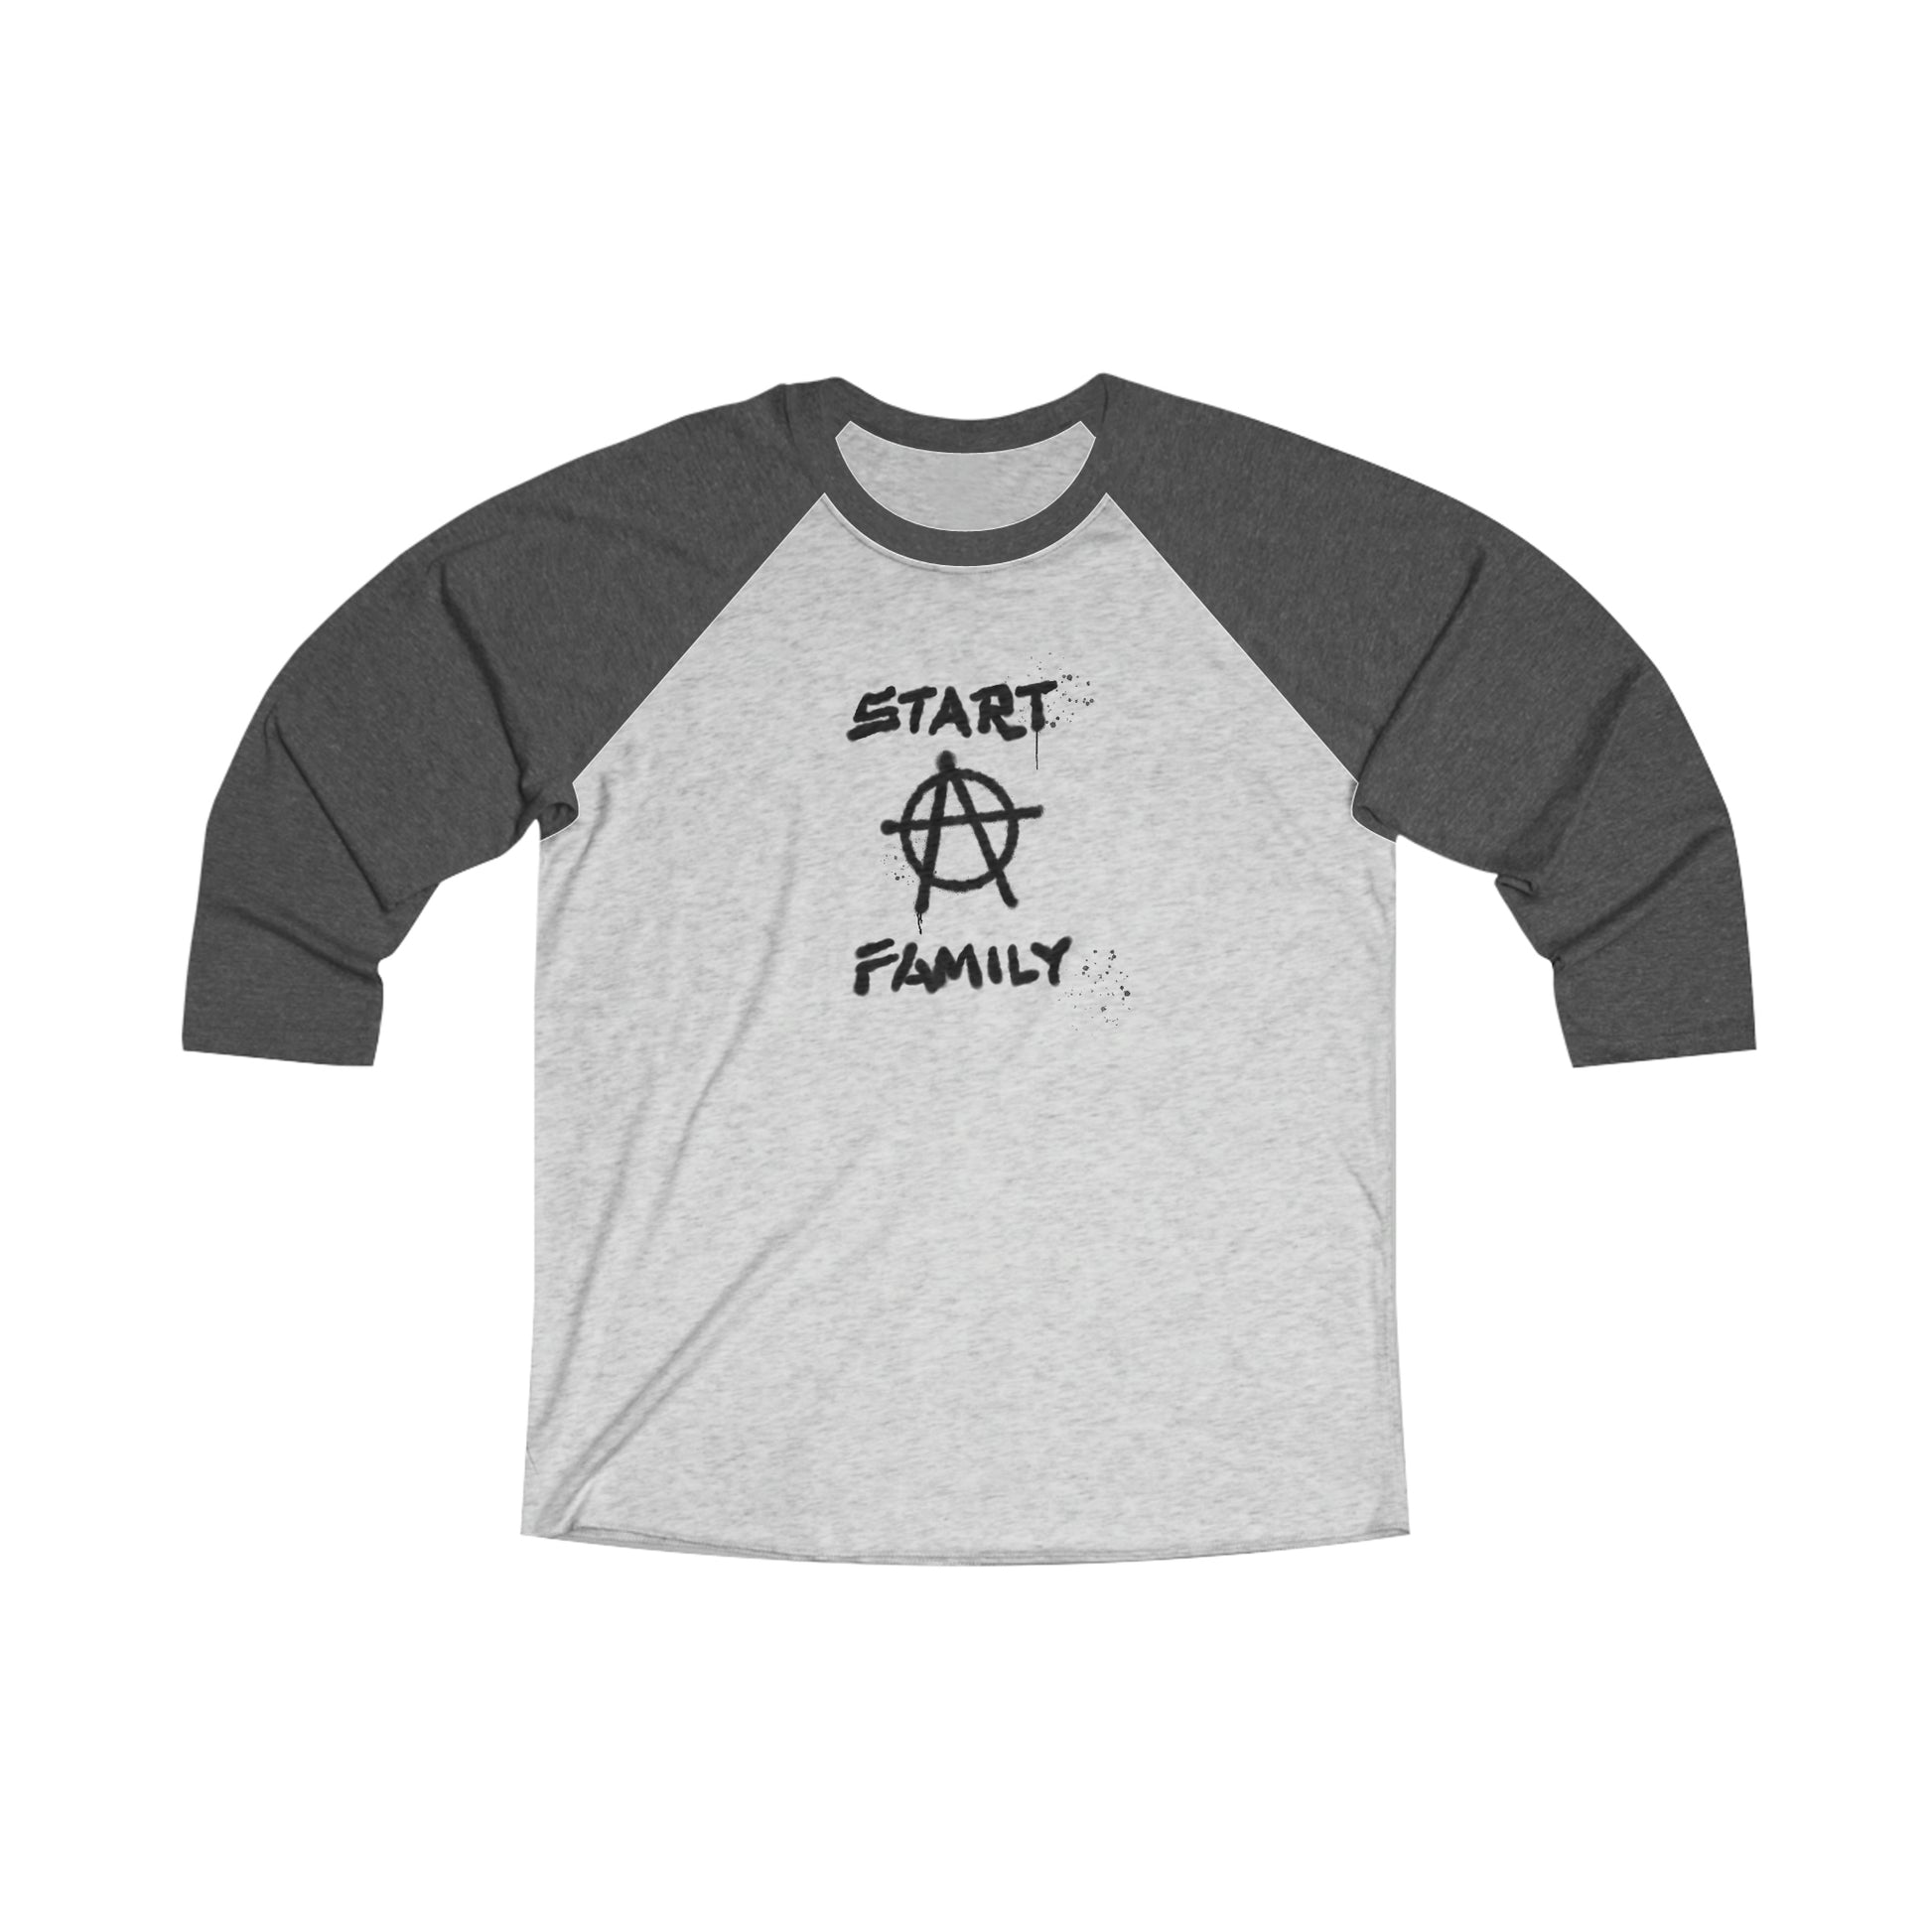 Start A Family shirt